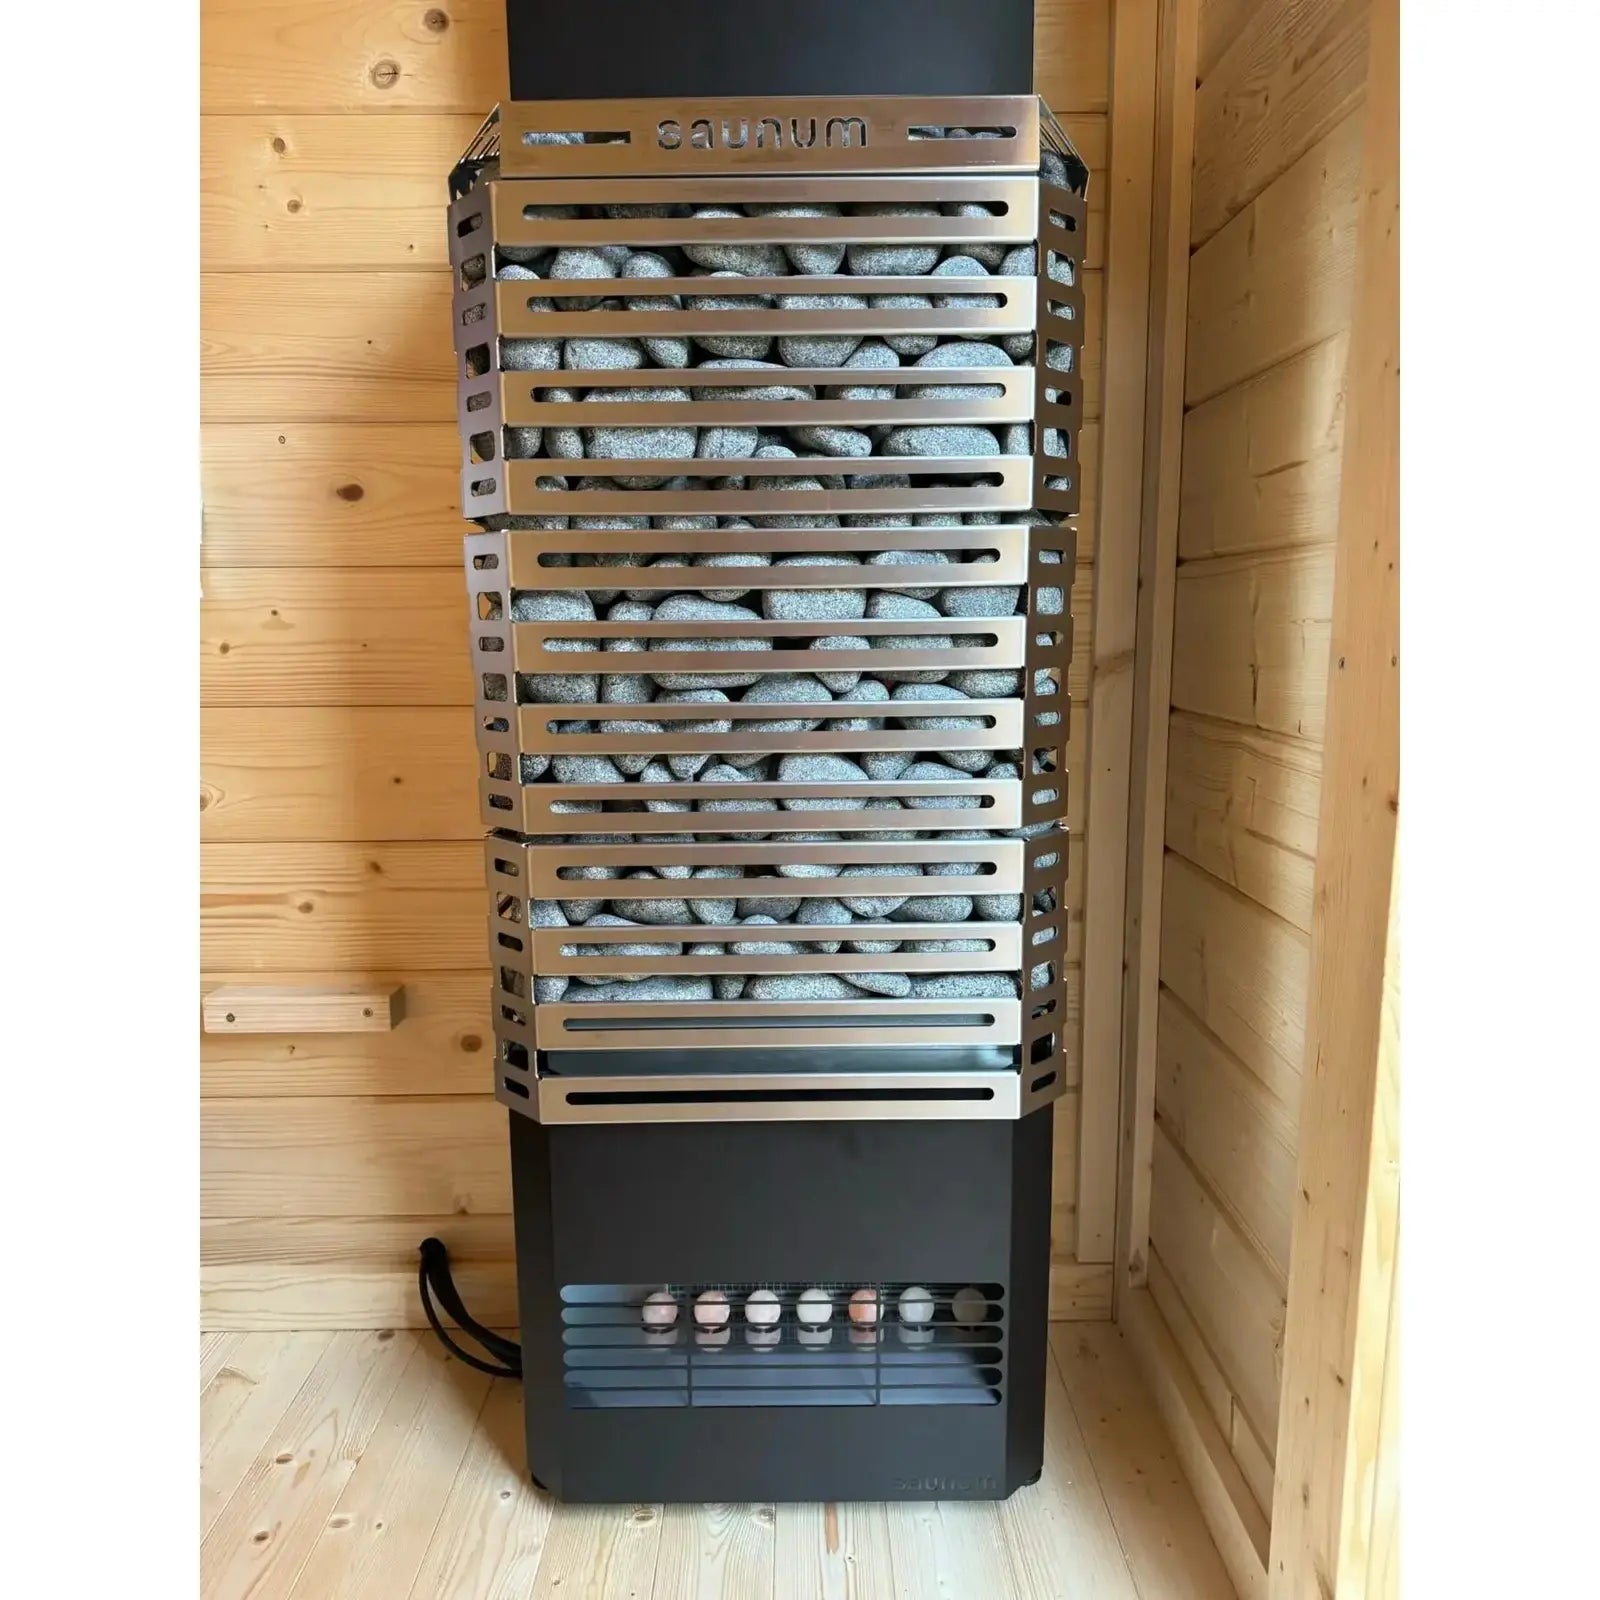 Saunum AIR 10 WiFi Sauna Heater Package, 9.6kW - Stainless Steel - Select Saunas